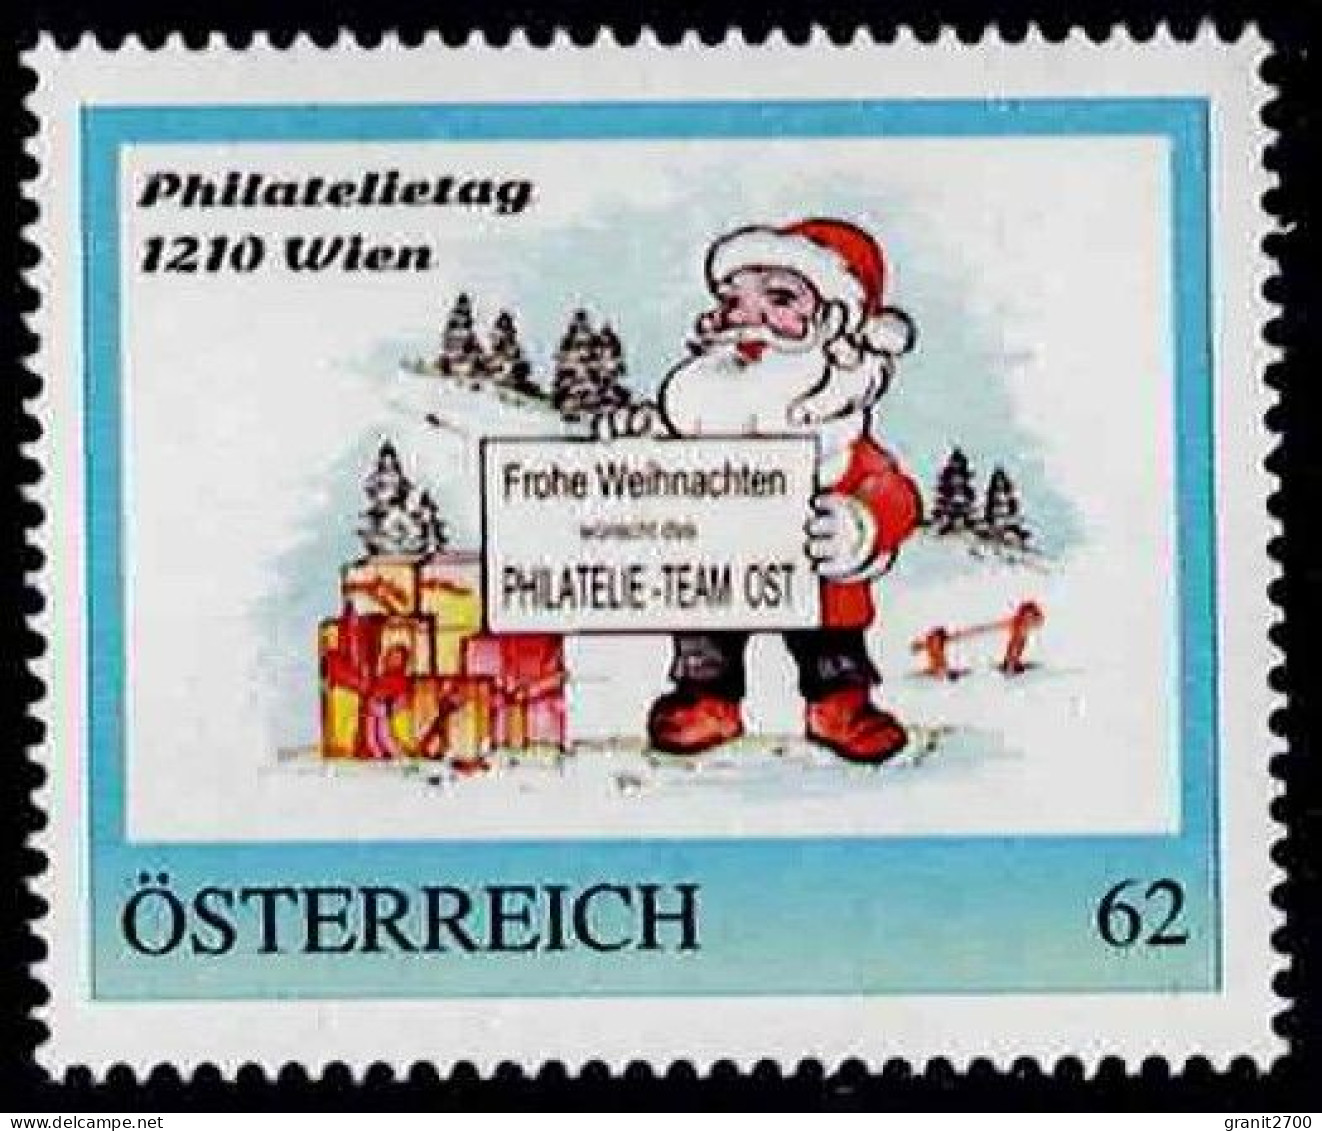 PM Philatelietag 1210 Wien - Frohe Weihnacht  Ex Bogen Nr. 8112488  Vom 18.12.2014  Postfrisch - Sellos Privados